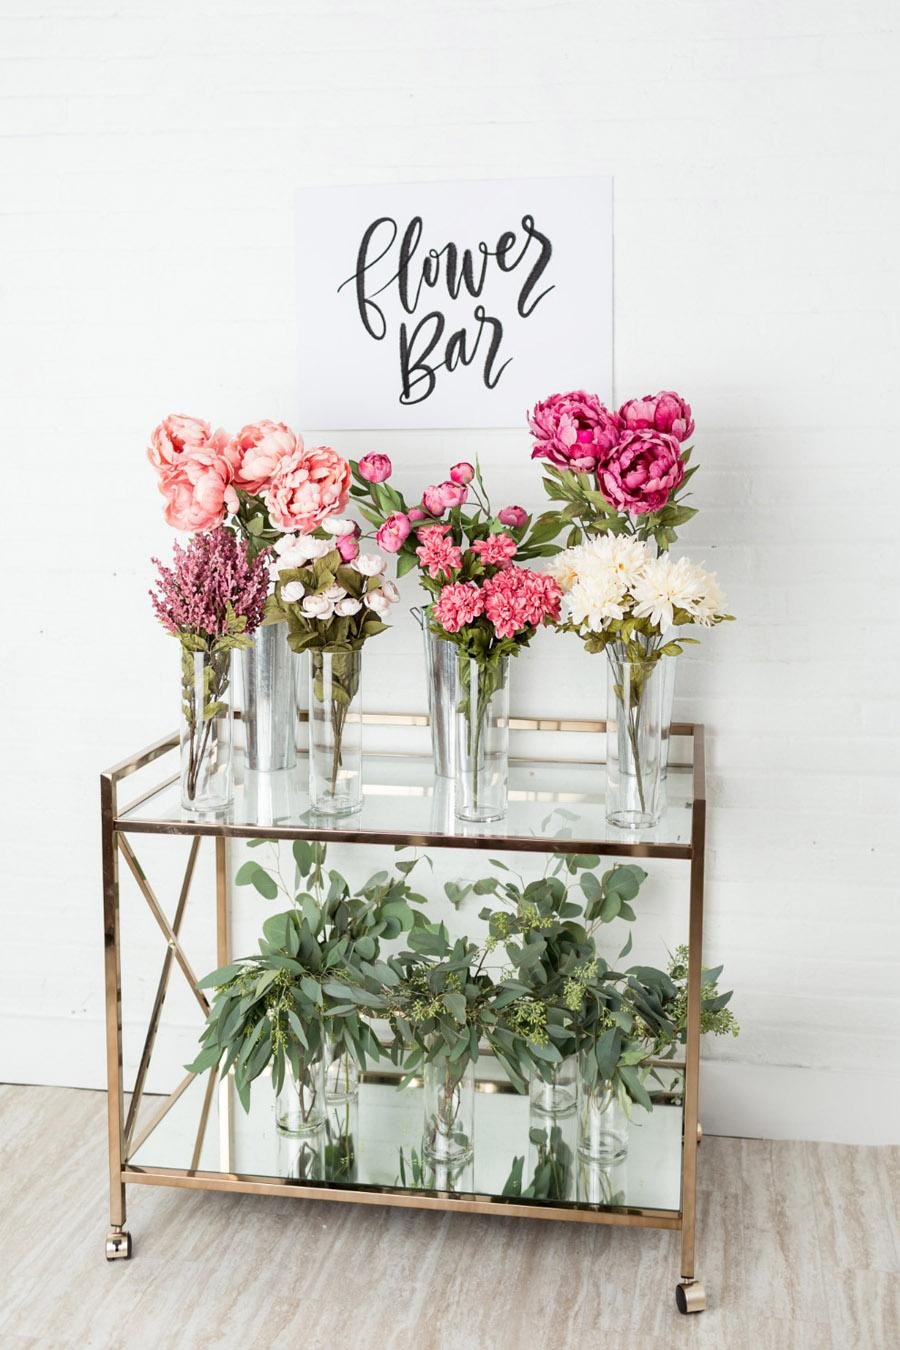 Dos cestas de mimbre decorativas en un bonito estilo rosa claro con una  decoración original hecha de flores y encajes elegante decoración floral en  cestas hechas a mano